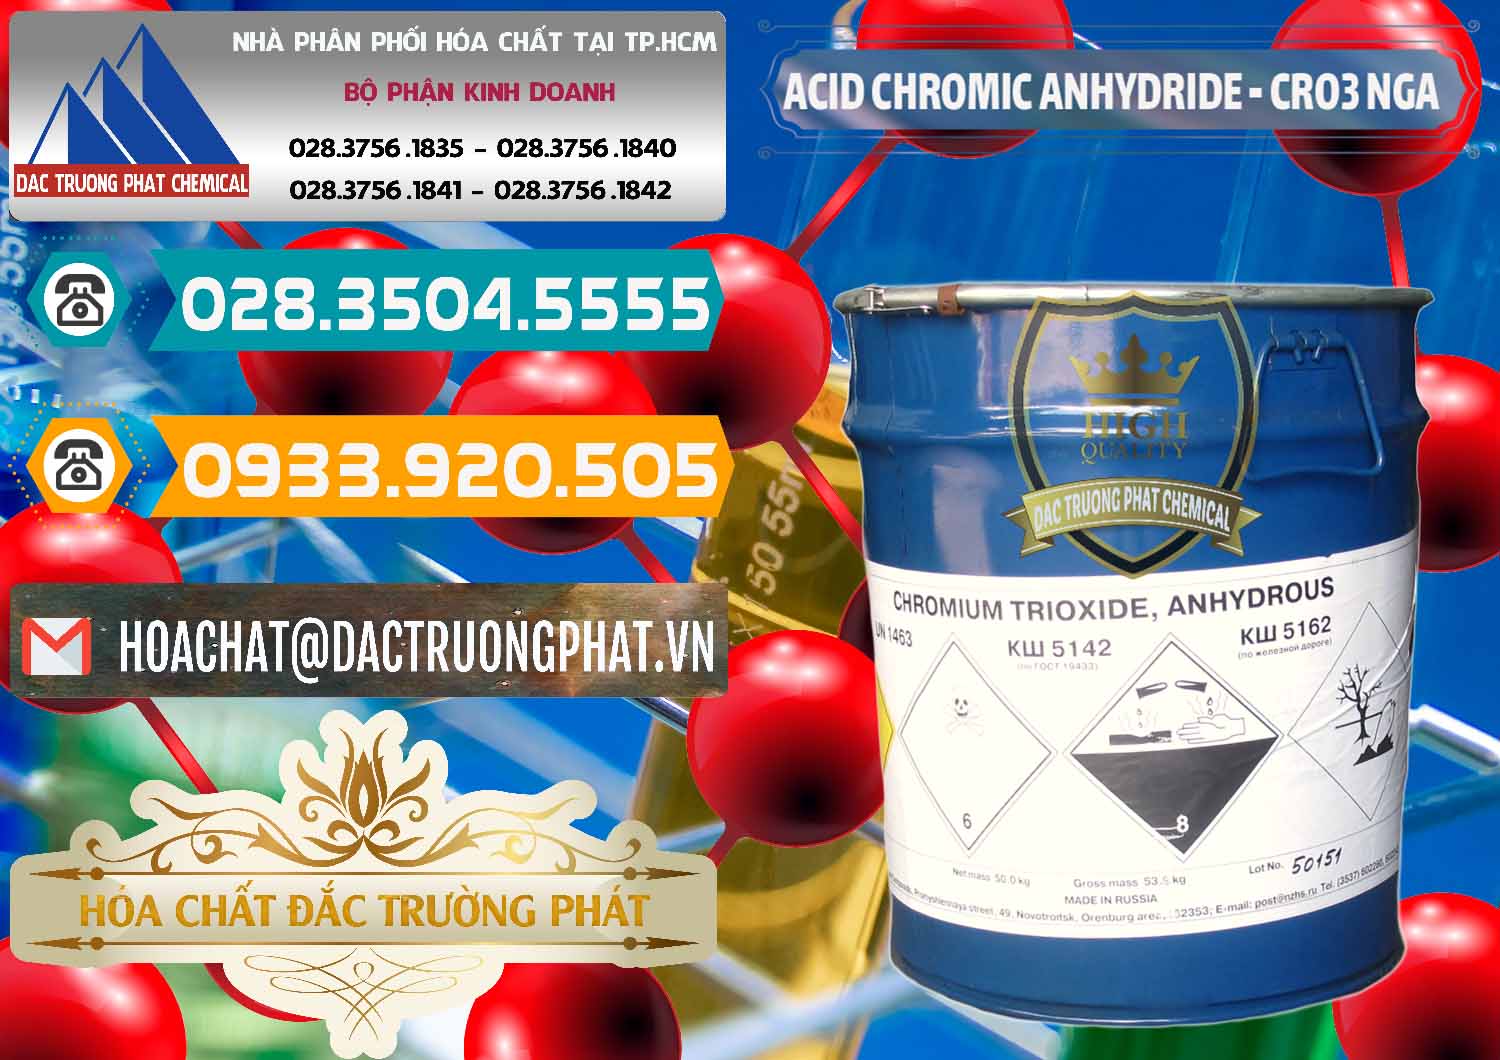 Nơi chuyên nhập khẩu - bán Acid Chromic Anhydride - Cromic CRO3 Nga Russia - 0006 - Cty chuyên phân phối & bán hóa chất tại TP.HCM - congtyhoachat.vn